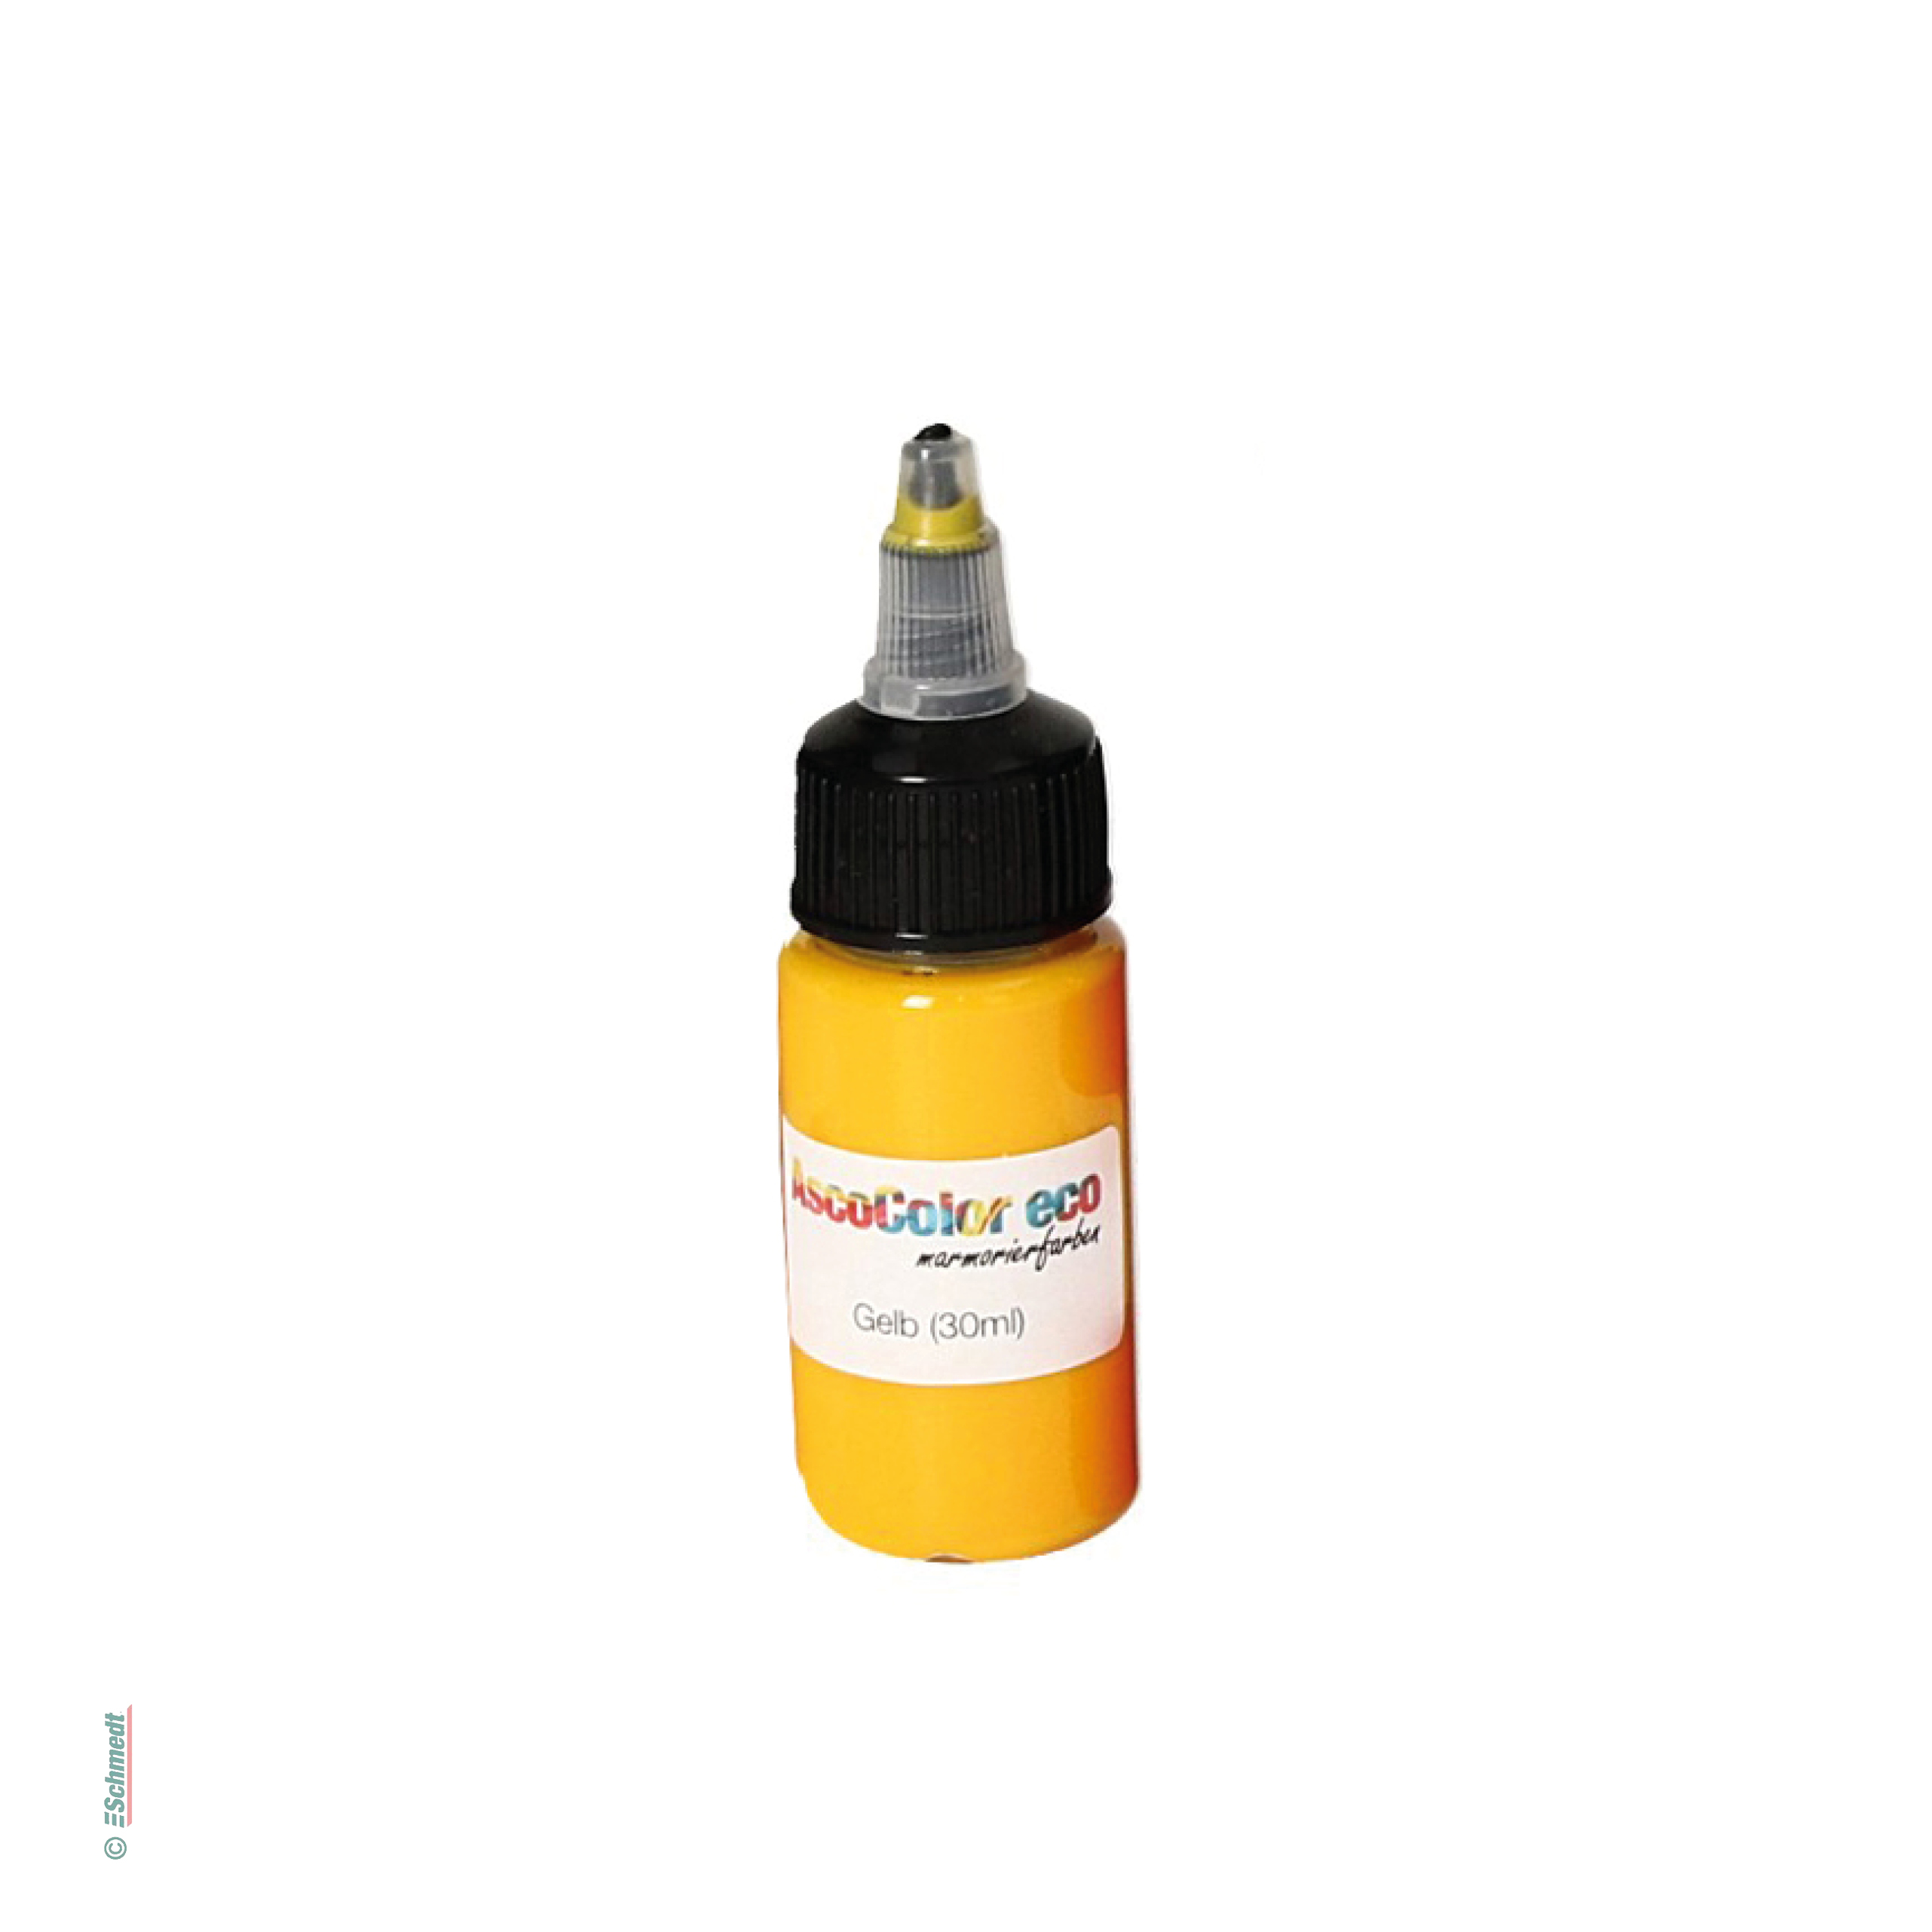 AscoColor eco - Marmorierfarbe - Farbe 101 - gelb - Gebindegröße Flasche / 30 ml - zur Herstellung marmorierter Papiere...